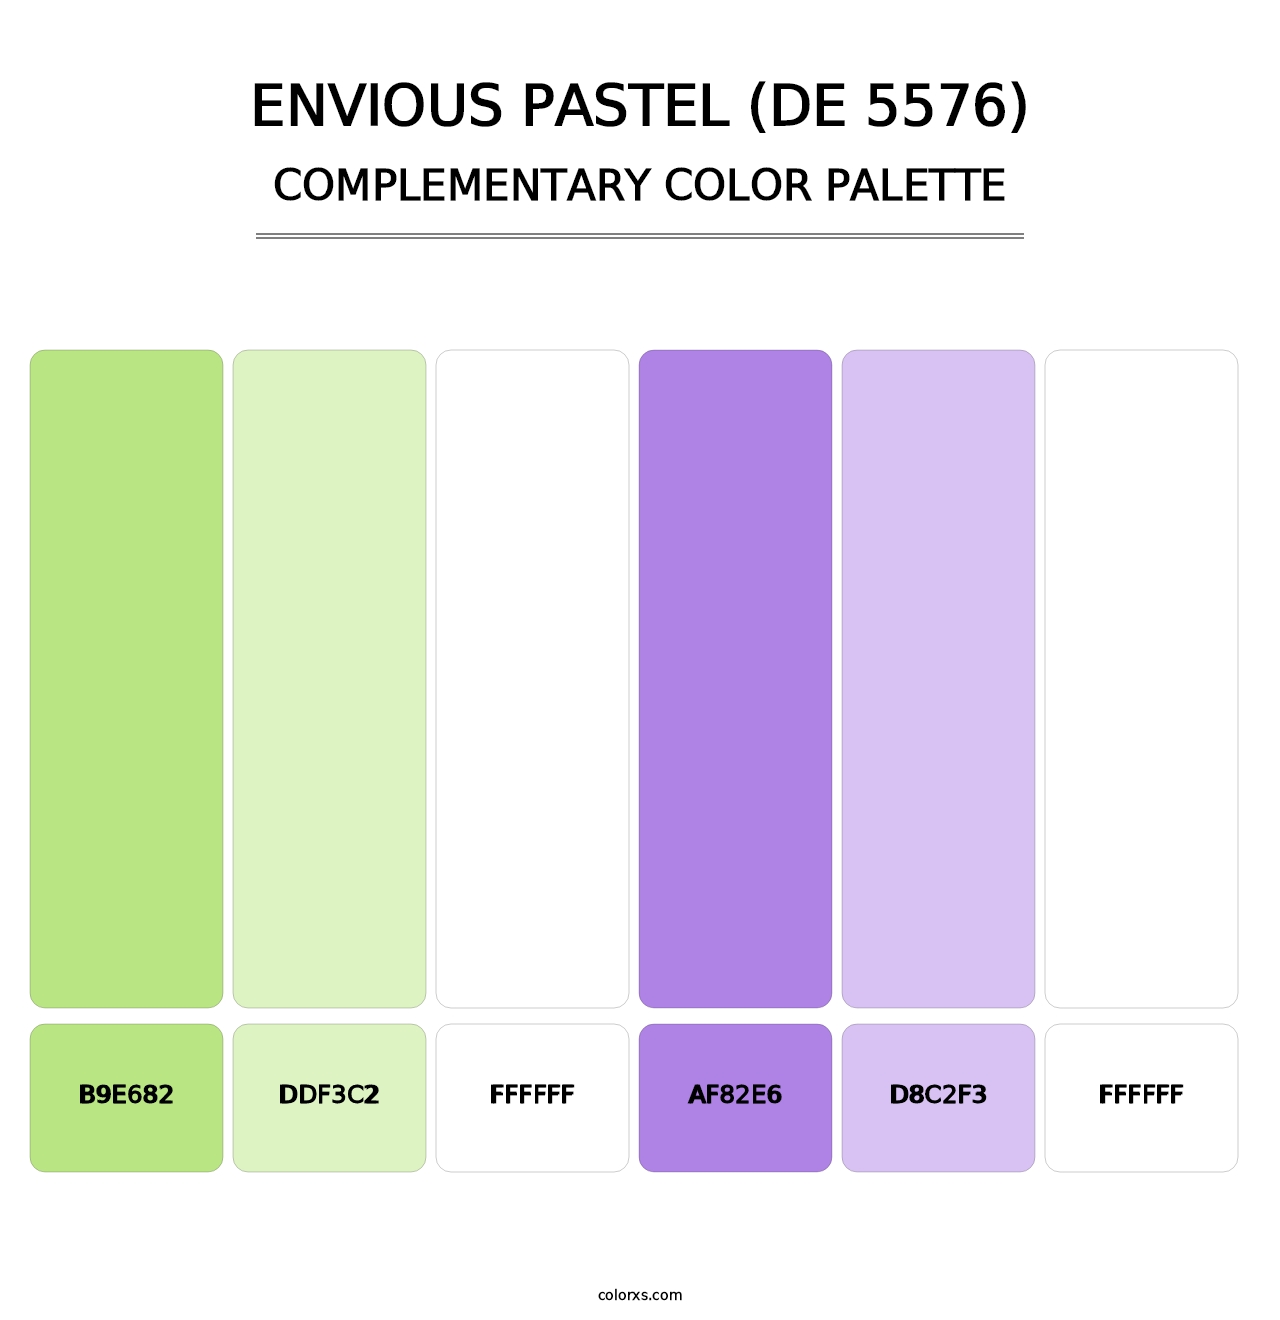 Envious Pastel (DE 5576) - Complementary Color Palette